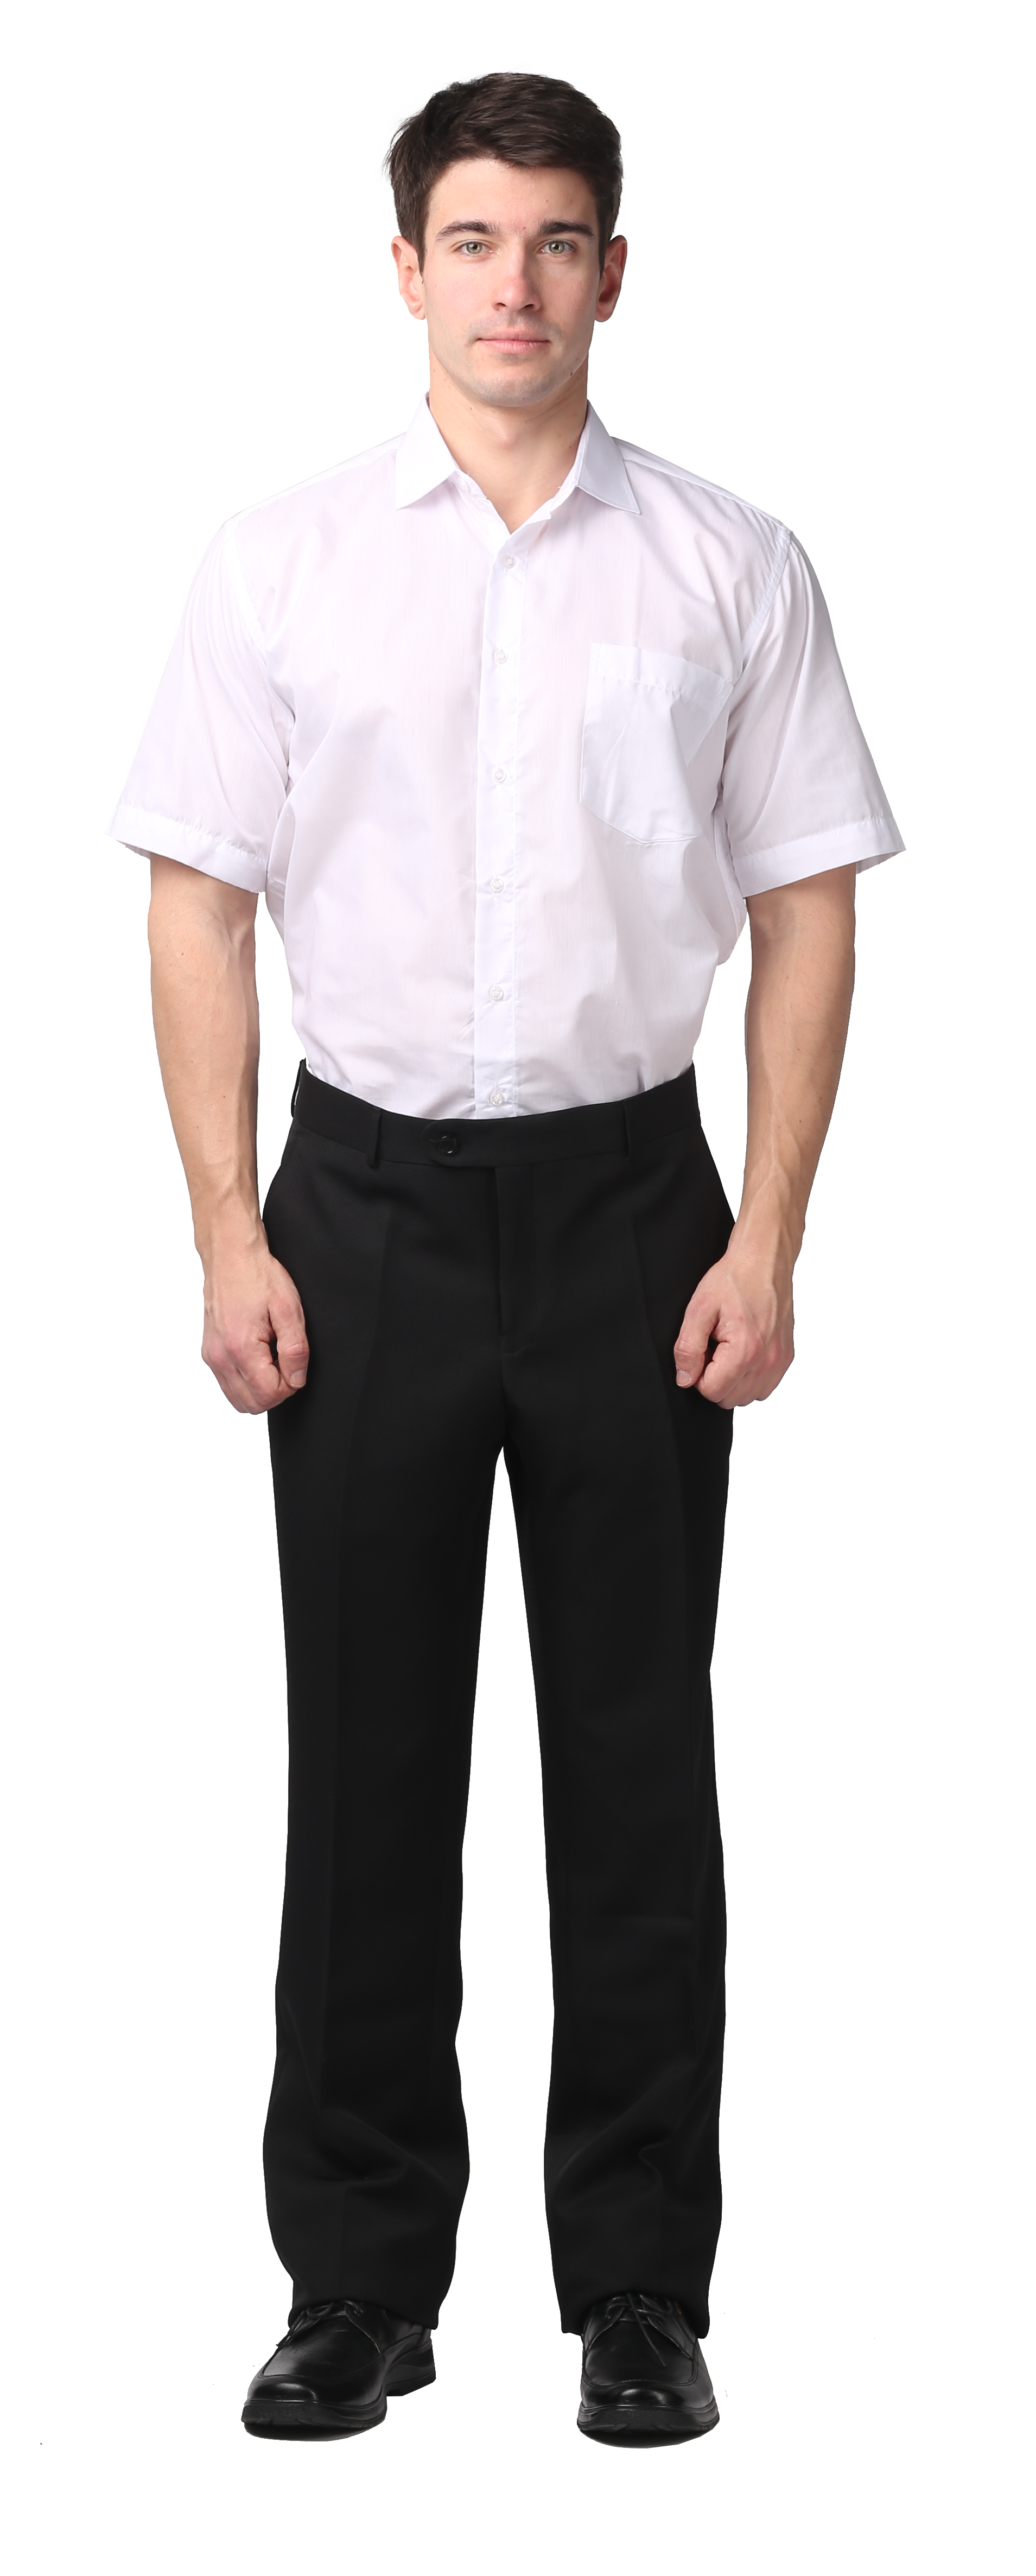 Мужчина в рубашке и брюках полный рост